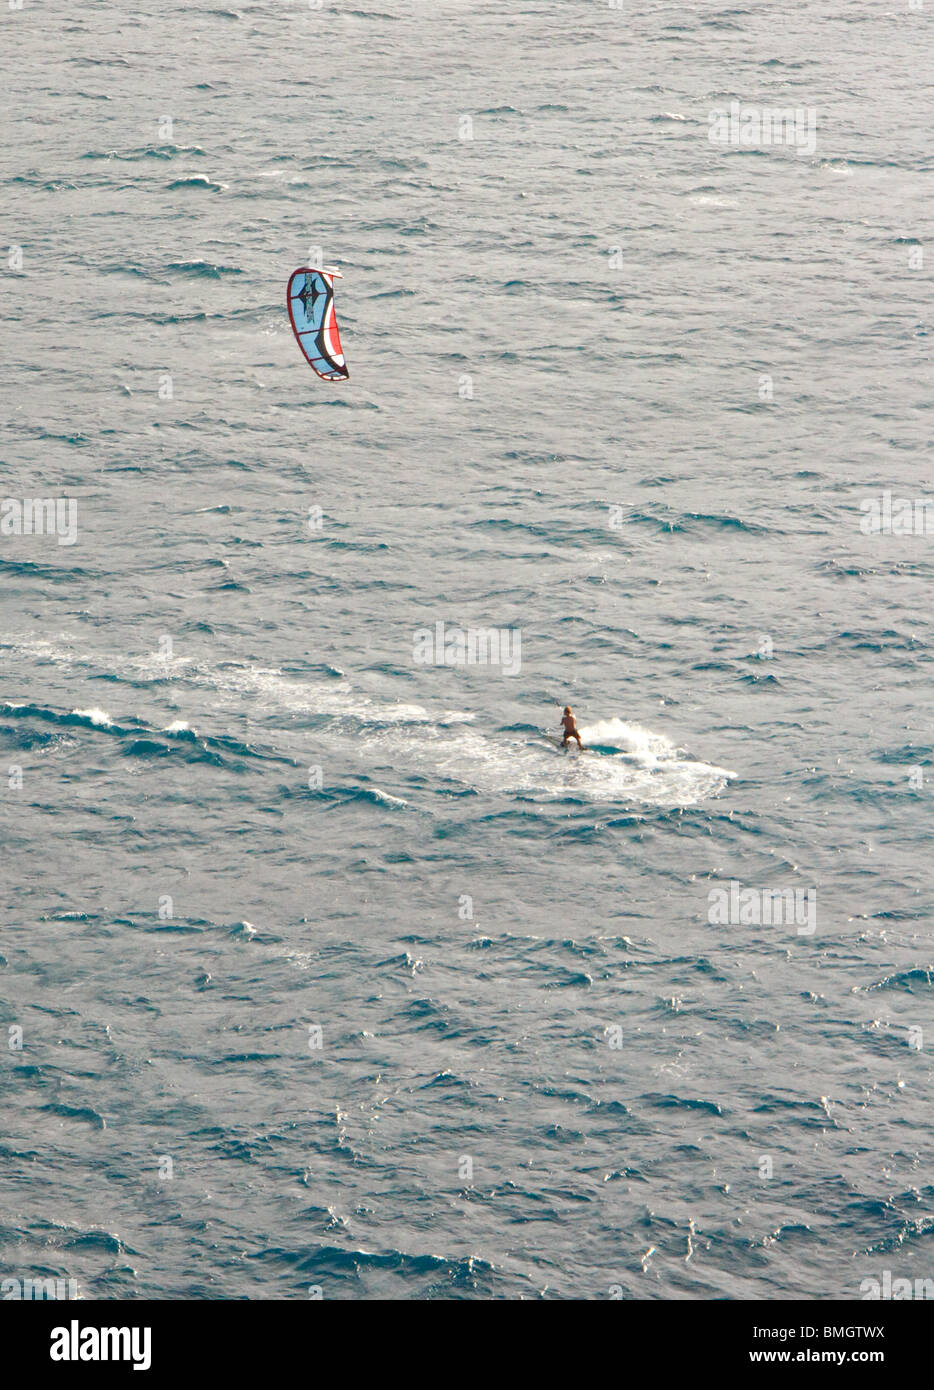 Vue aérienne de kiteboarder Banque D'Images